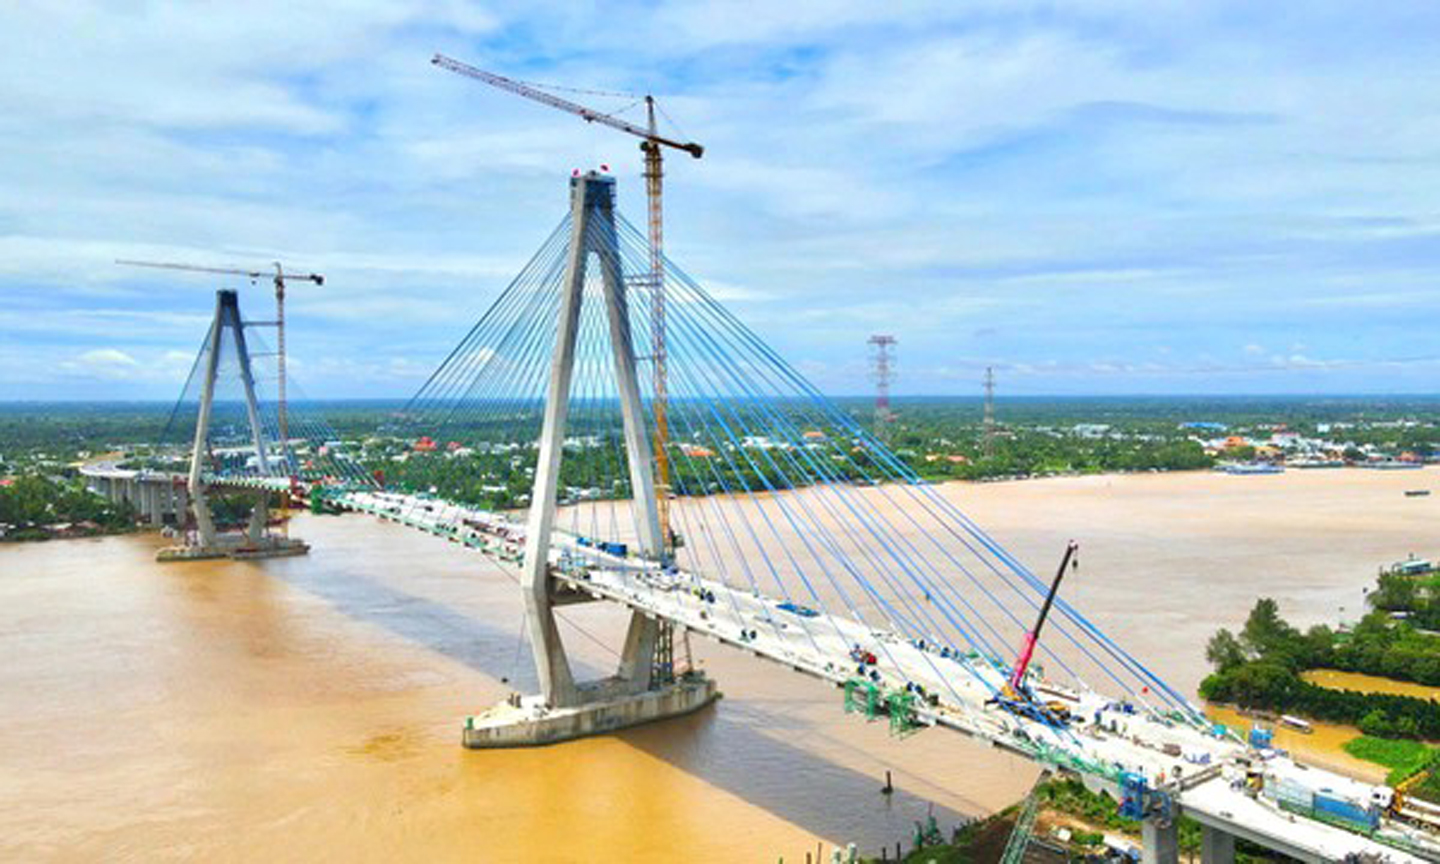 Cầu Mỹ Thuận 2 là cầu dây văng lớn nhất do các nhà thầu Việt Nam thiết kế và thi công. Ảnh: Báo GT